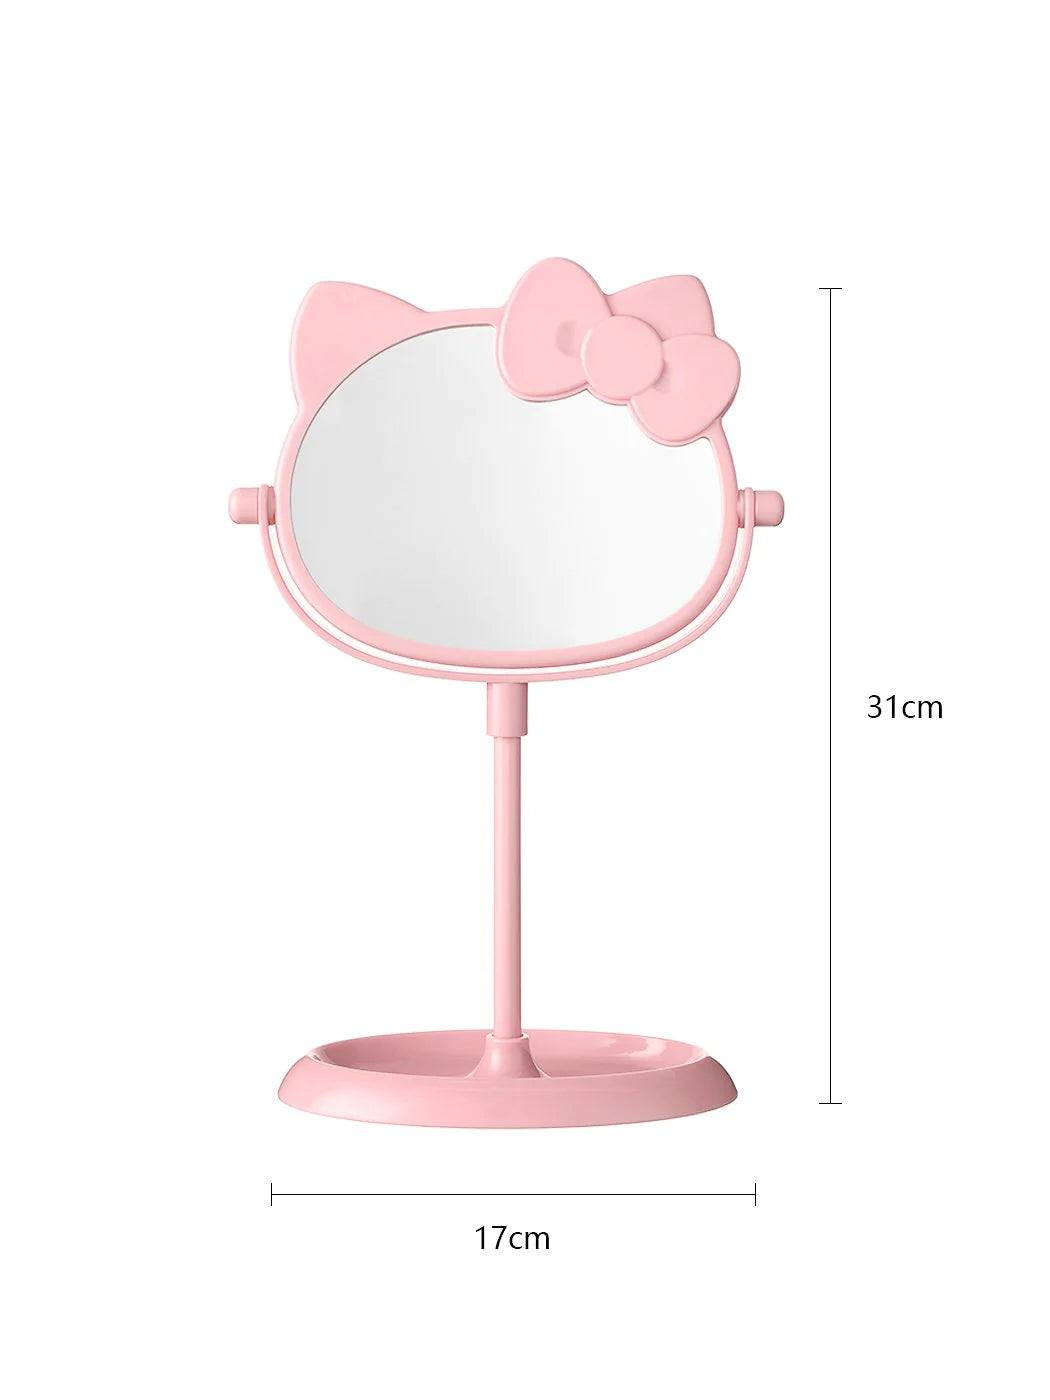 MINISO Japan "Hello Kitty Schminkspiegel Princess Table" Sanrio